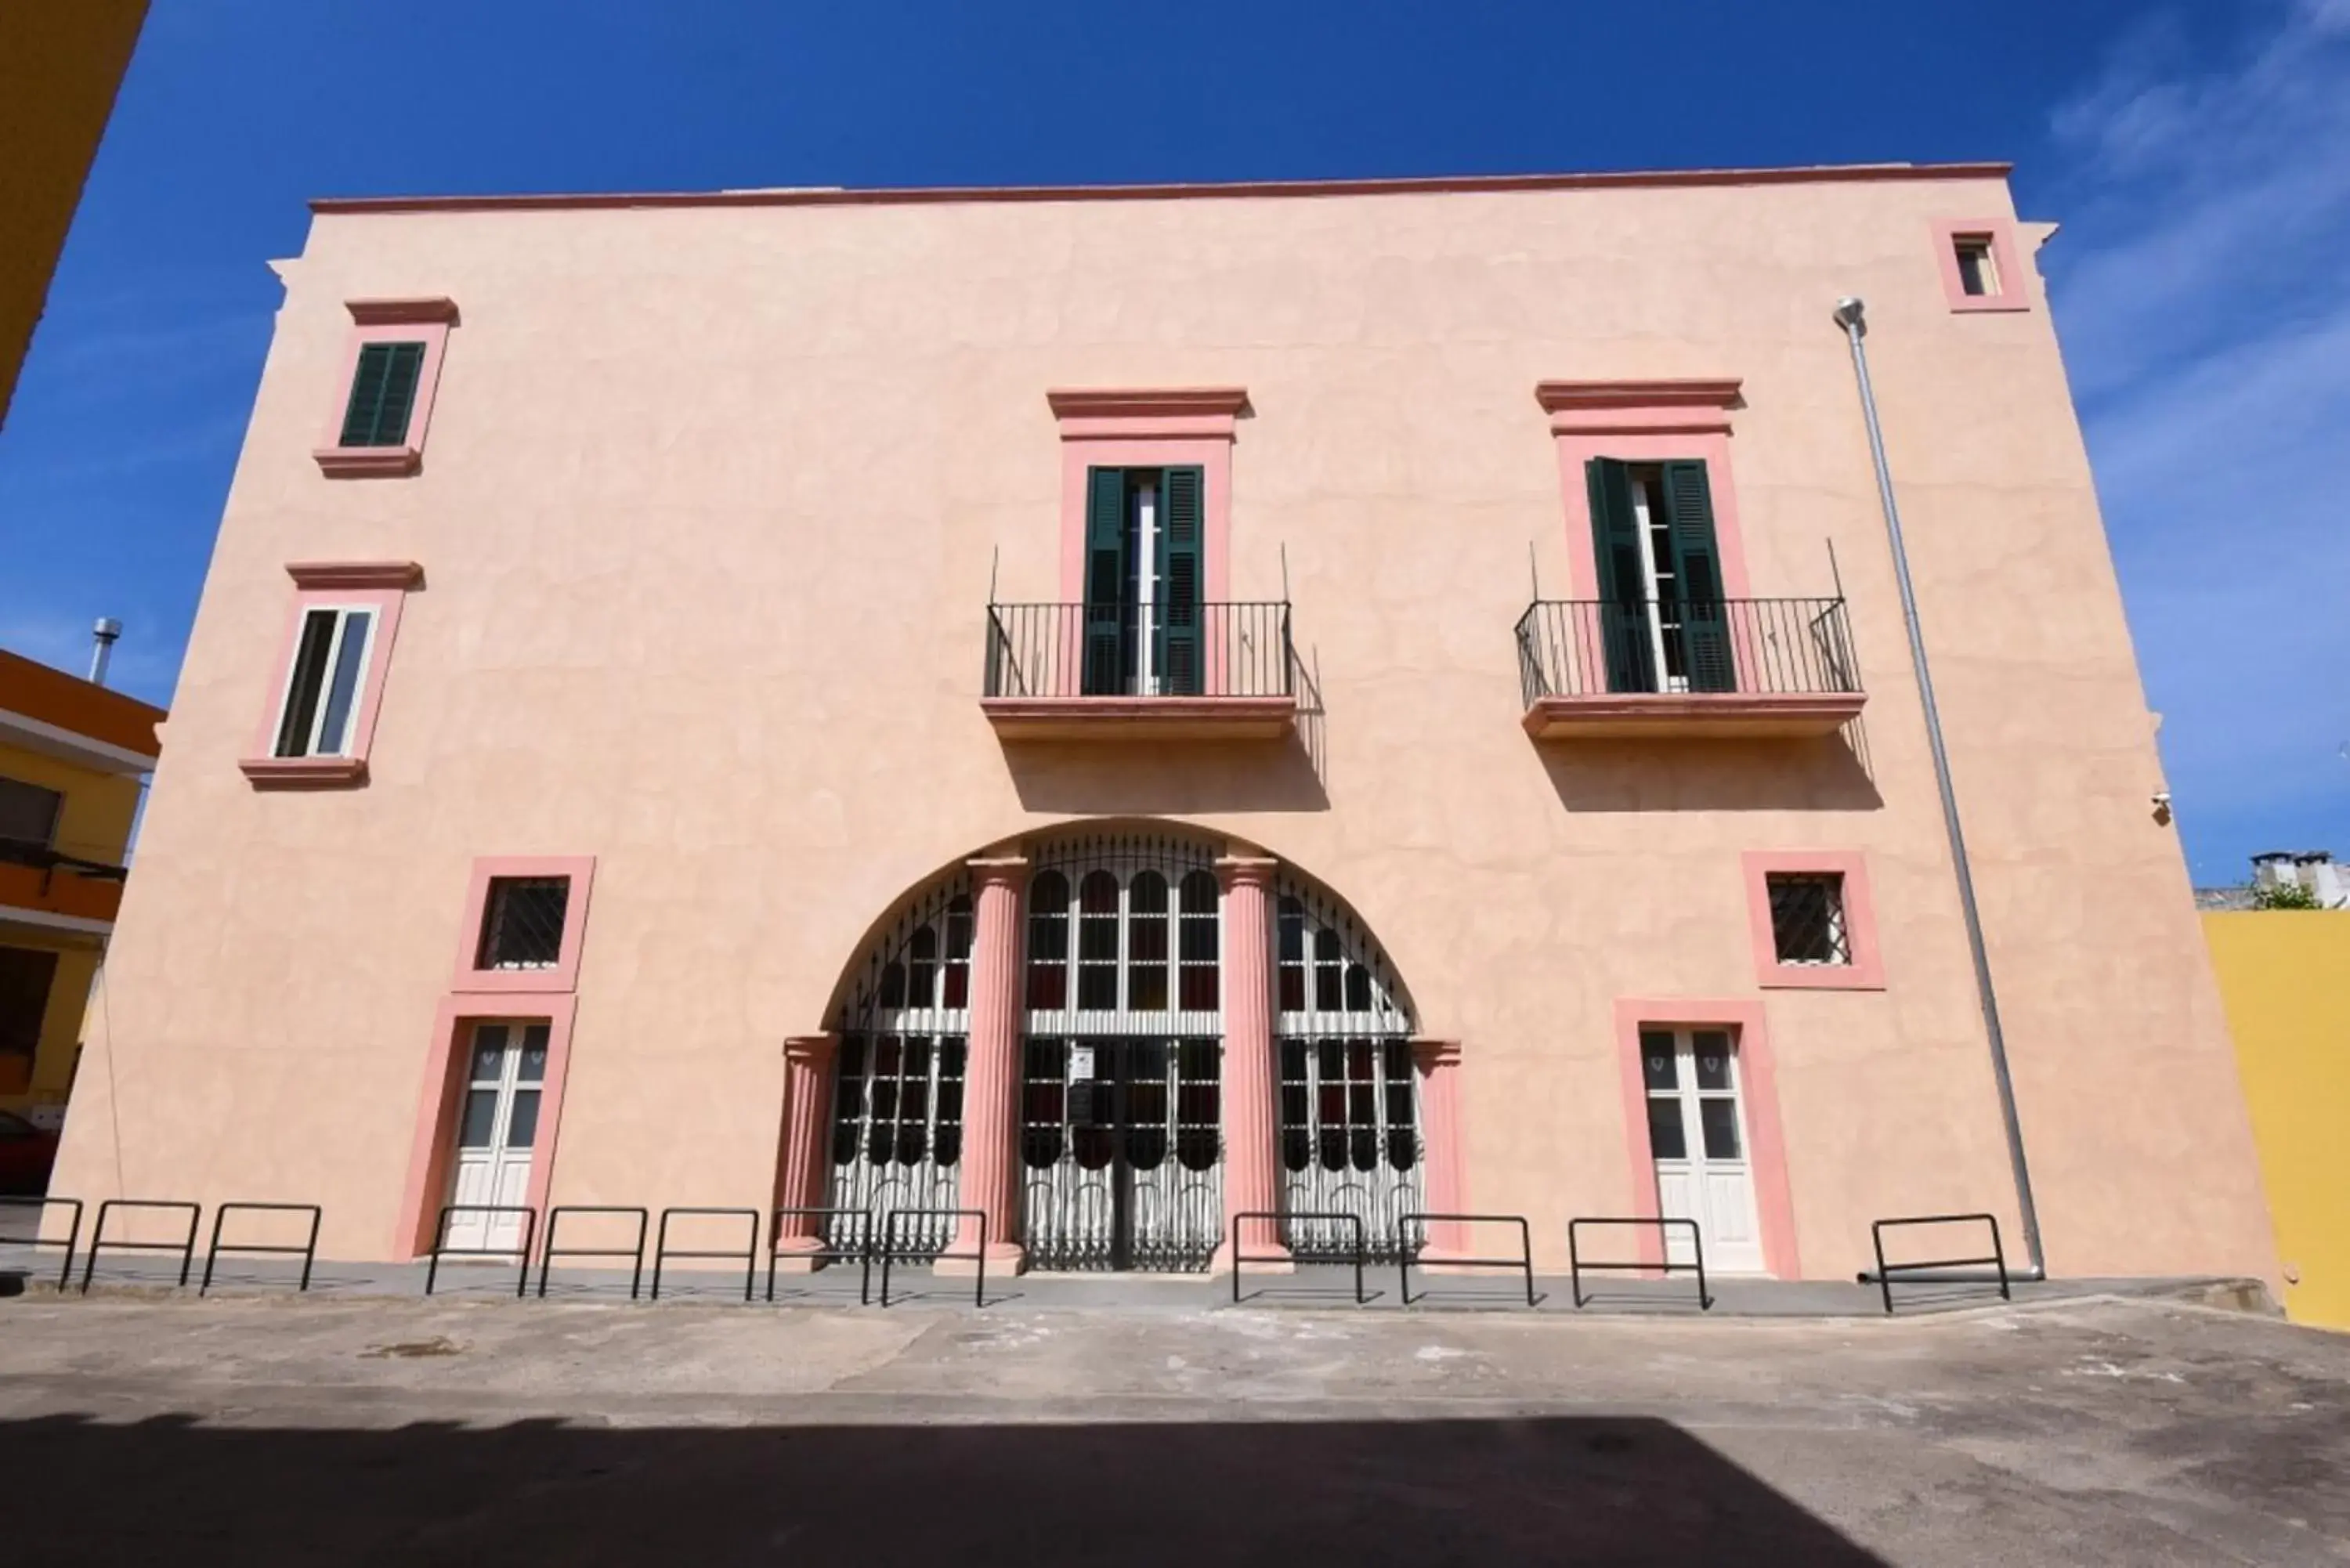 Property building, Facade/Entrance in Palazzo Castriota Scanderberg